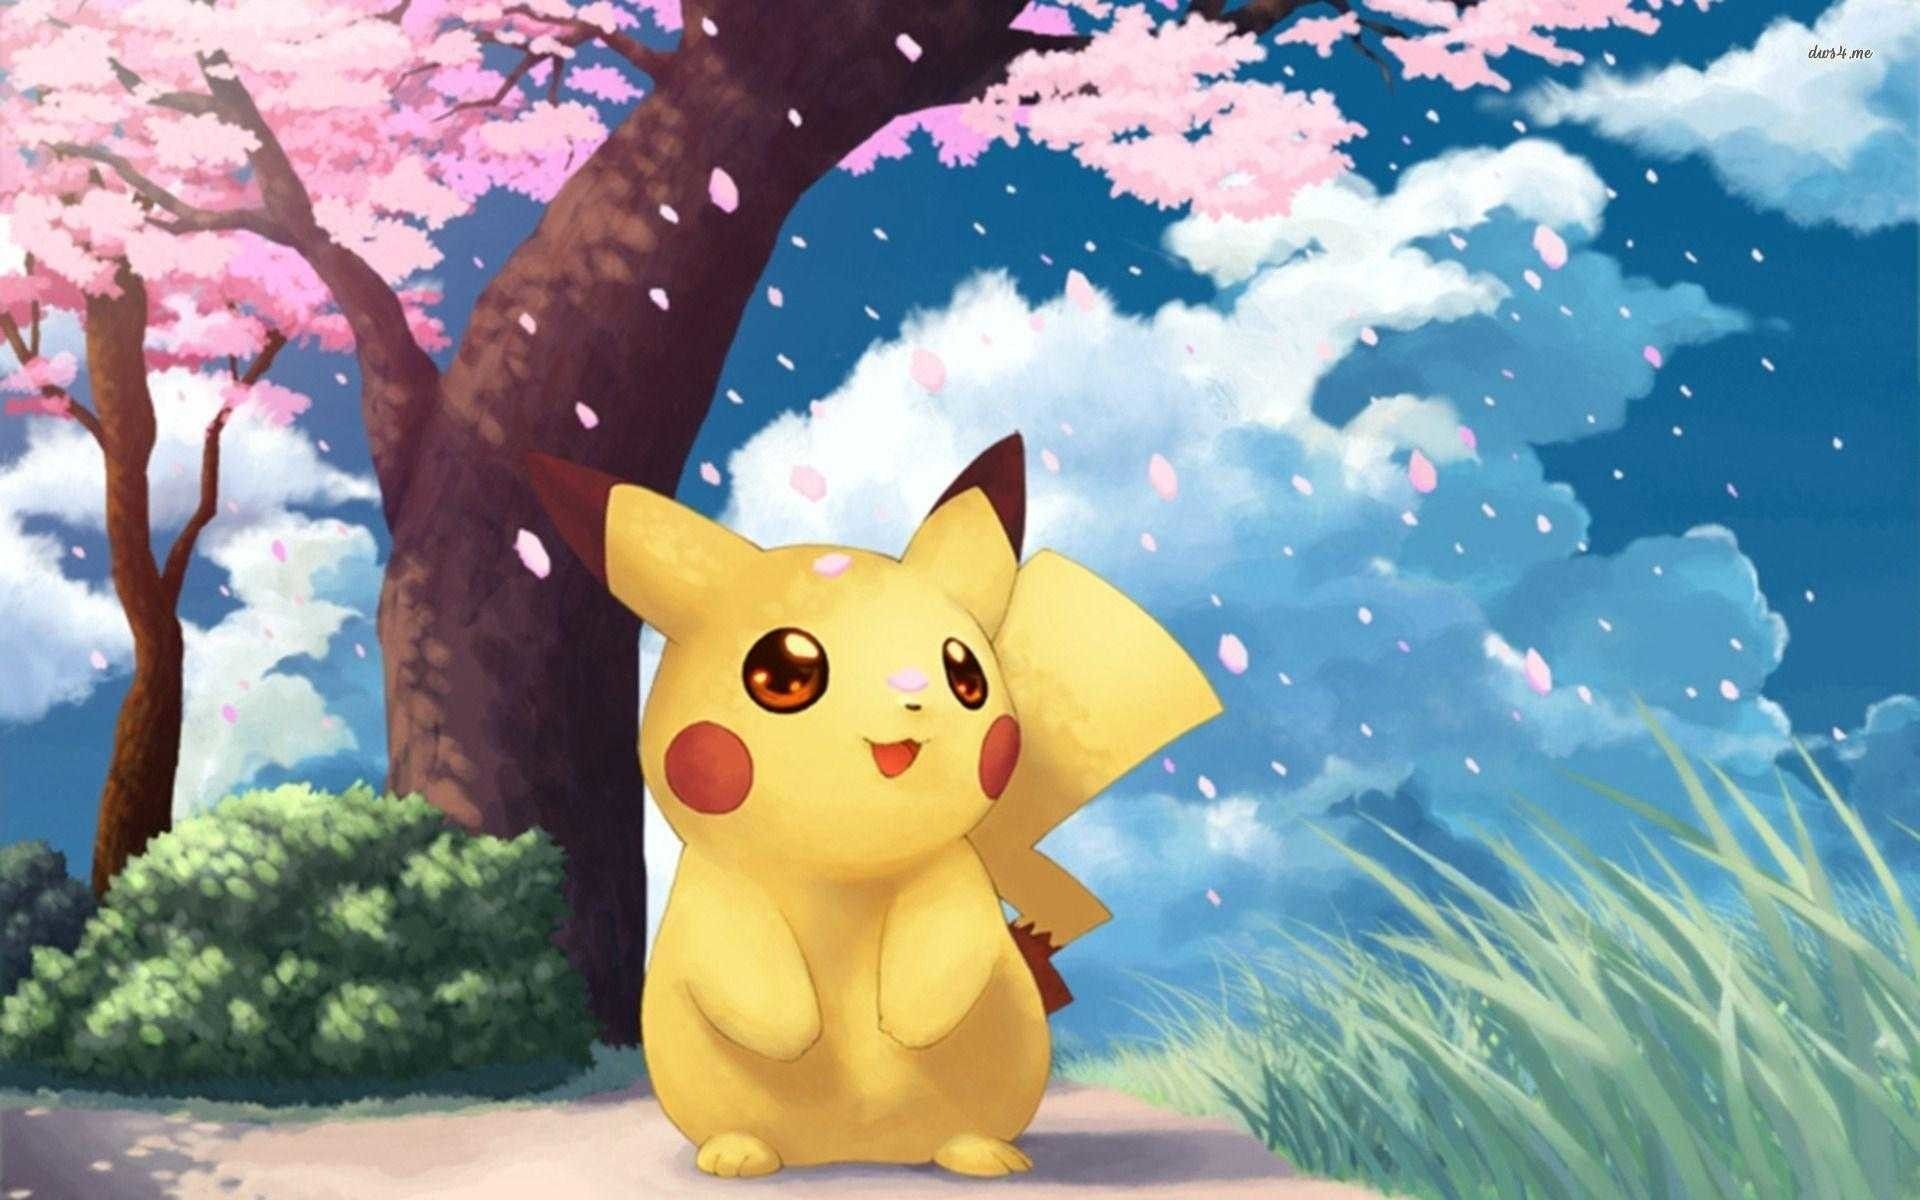 Hình nền Pokemon dễ thương động sẽ khiến bạn cảm thấy như đang sống trong thế giới của chính những Pokémon mà bạn yêu thích. Các hình nền đầy màu sắc và sống động làm bạn cảm thấy vui vẻ và tràn đầy năng lượng. Điều đó sẽ thật tuyệt vời khi bạn sử dụng chúng làm hình nền cho thiết bị của mình!